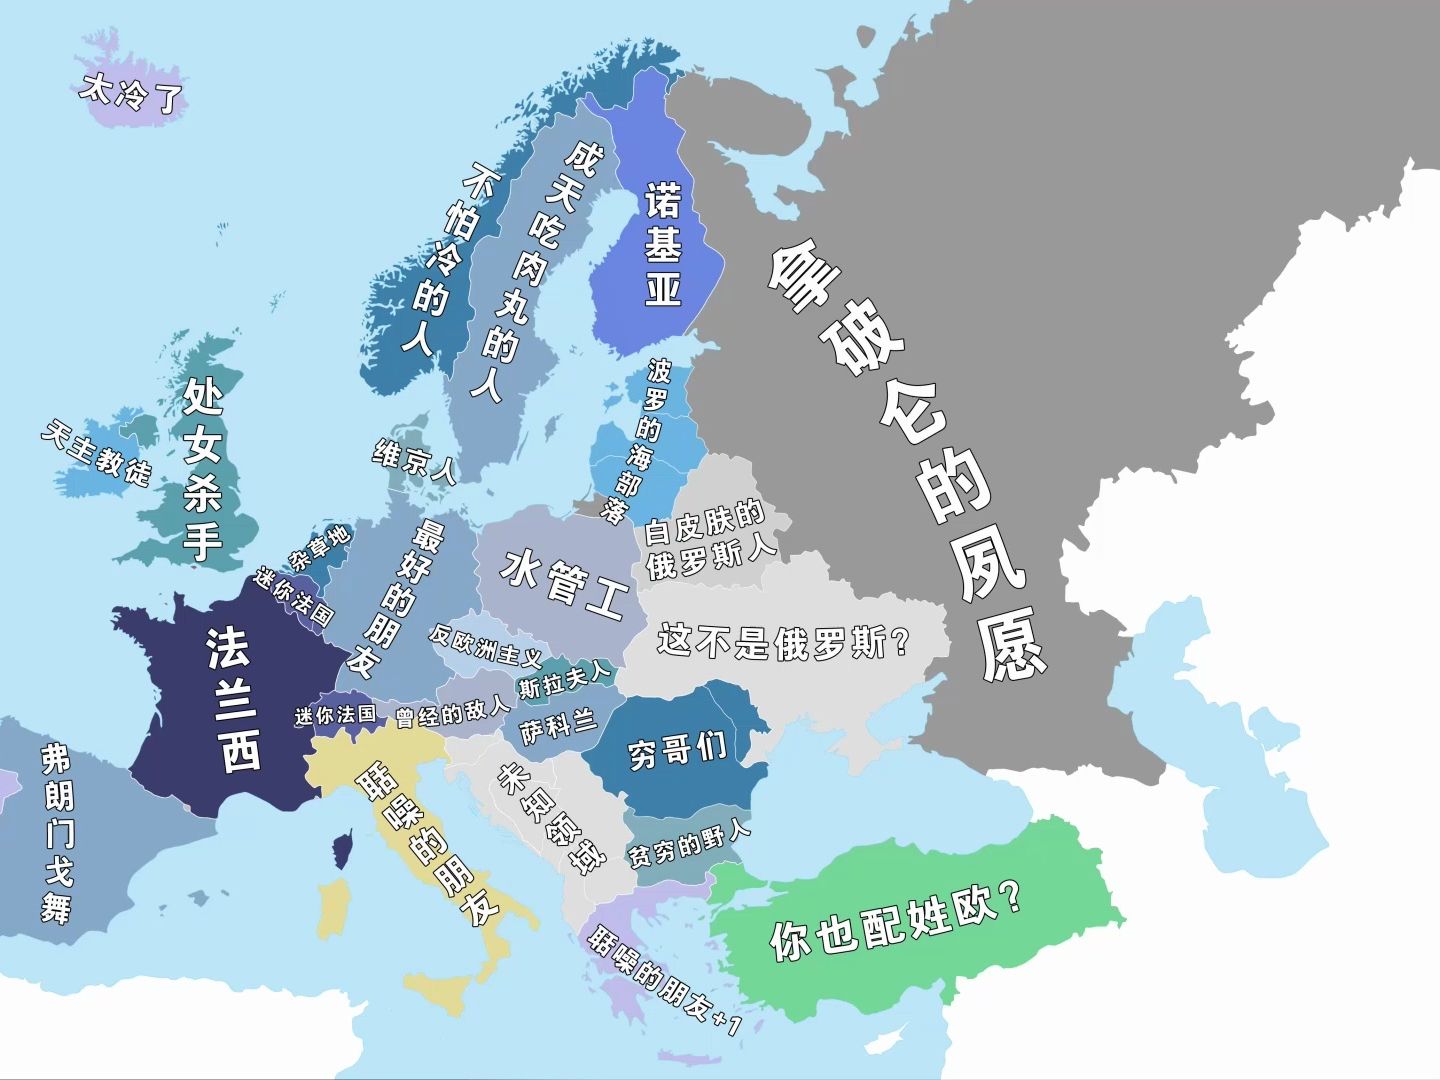 “欧洲无法统一的原因”【偏见地图3.0】